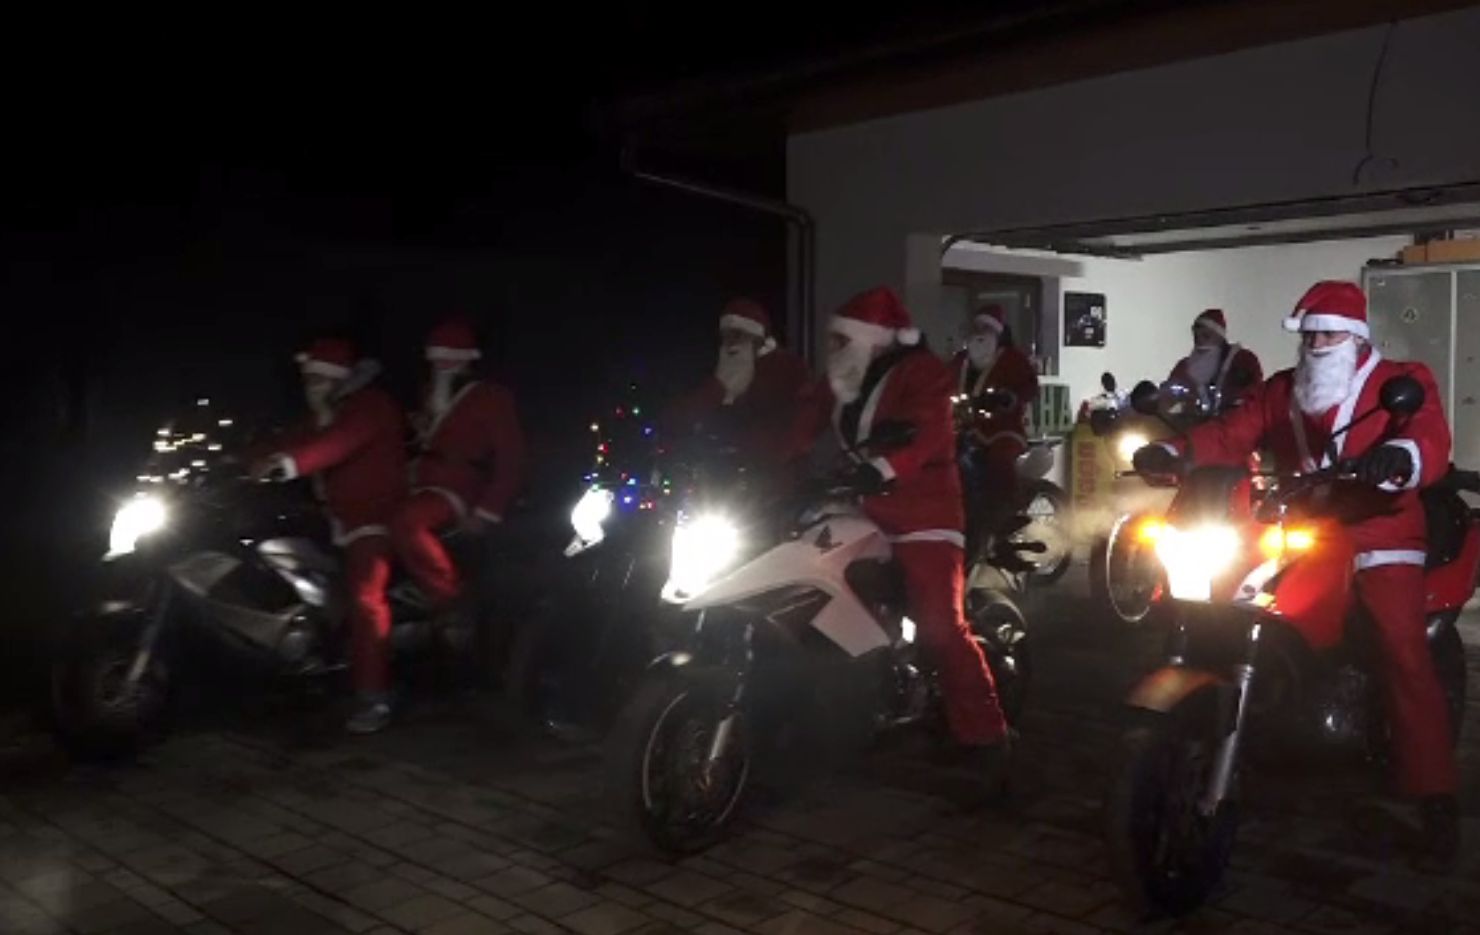 Moșul a venit pe motocicletă în Mureș, la fel ca și ajutoarele lui. Au împărțit cadouri copiilor cuminți